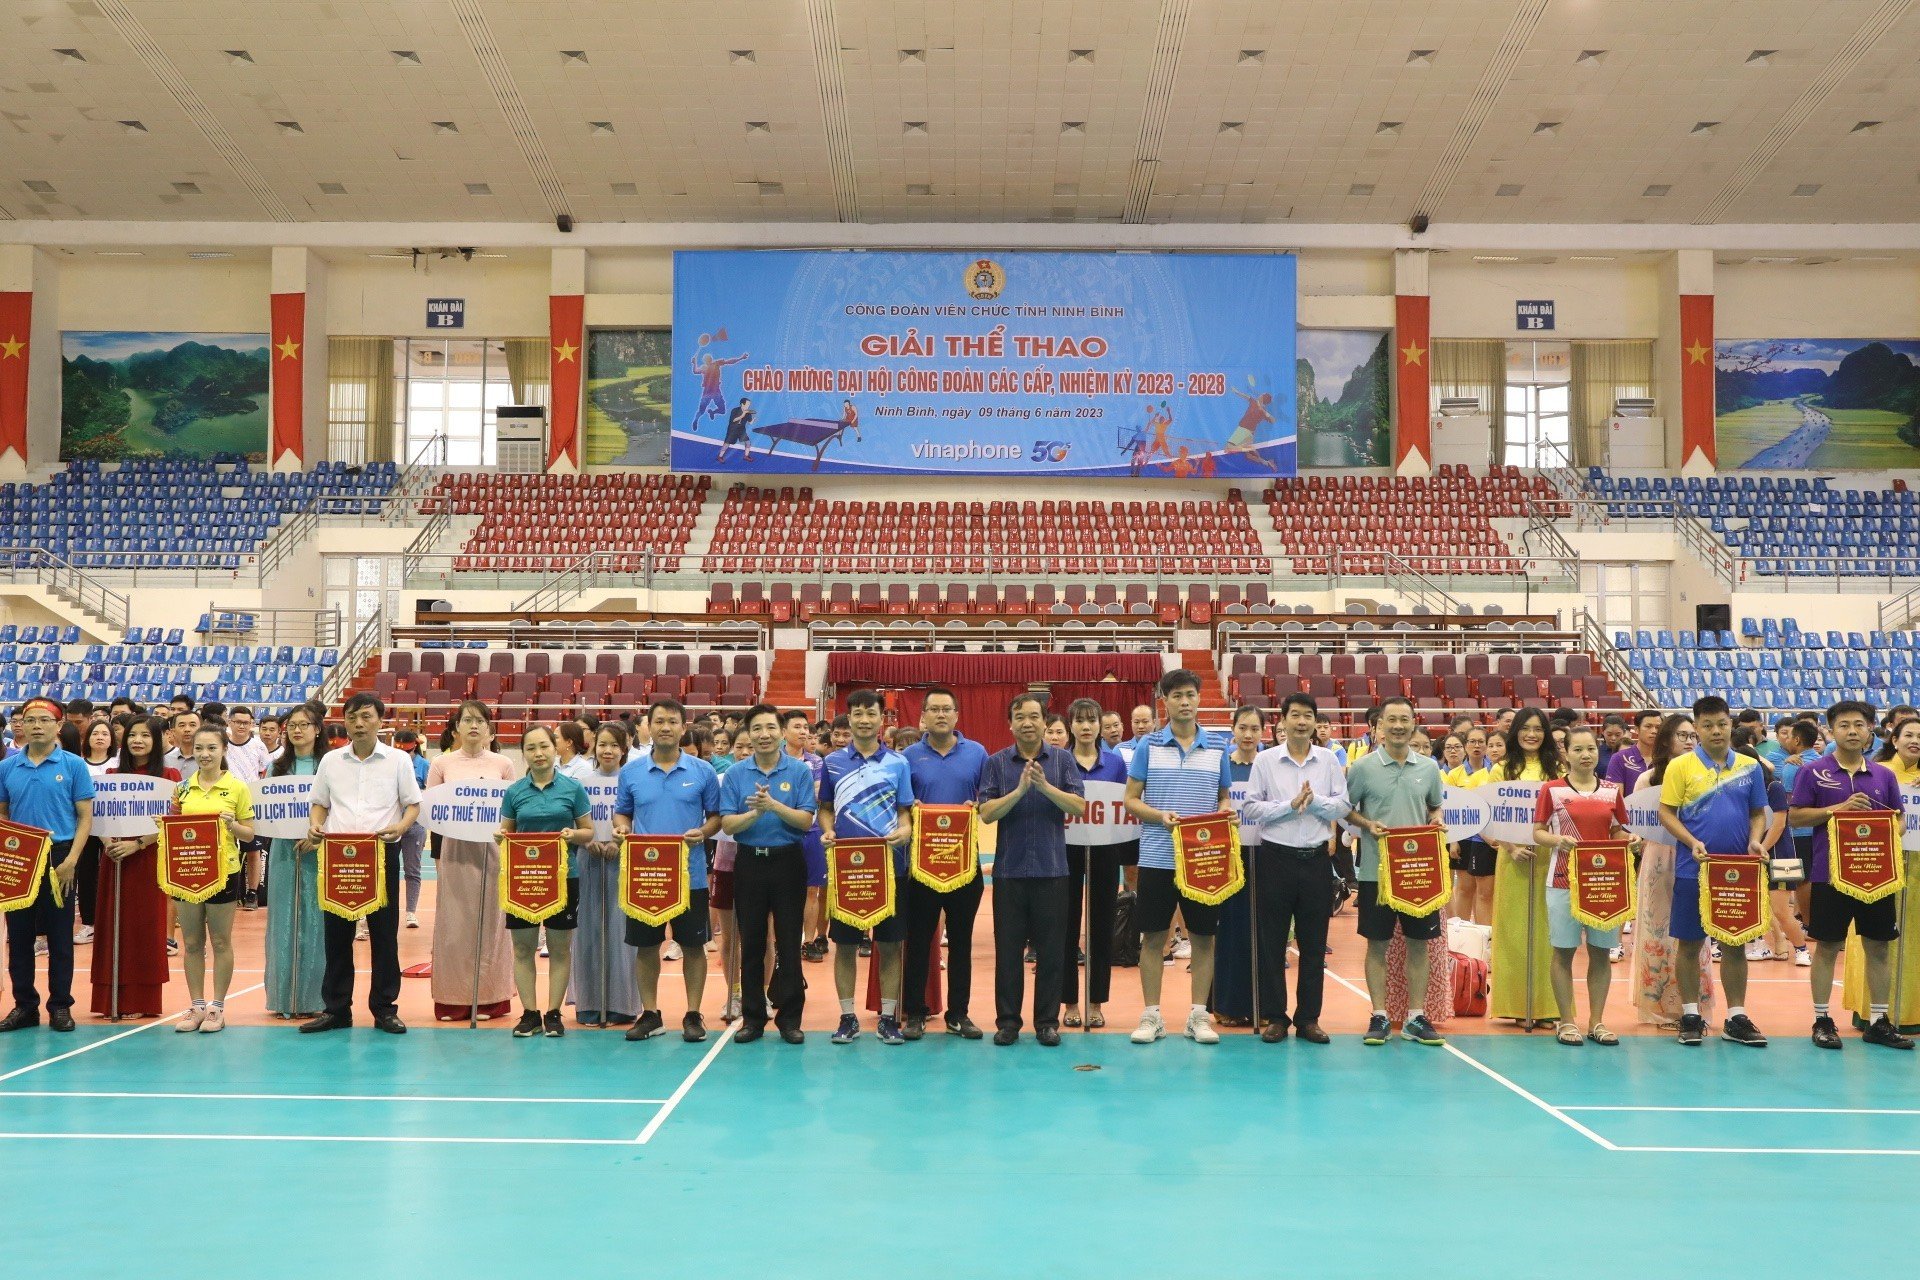 Công đoàn Viên chức tỉnh Ninh Bình tổ chức Giải thể thao Chào mừng Đại hội công đoàn các cấp nhiệm kỳ 2023-2028